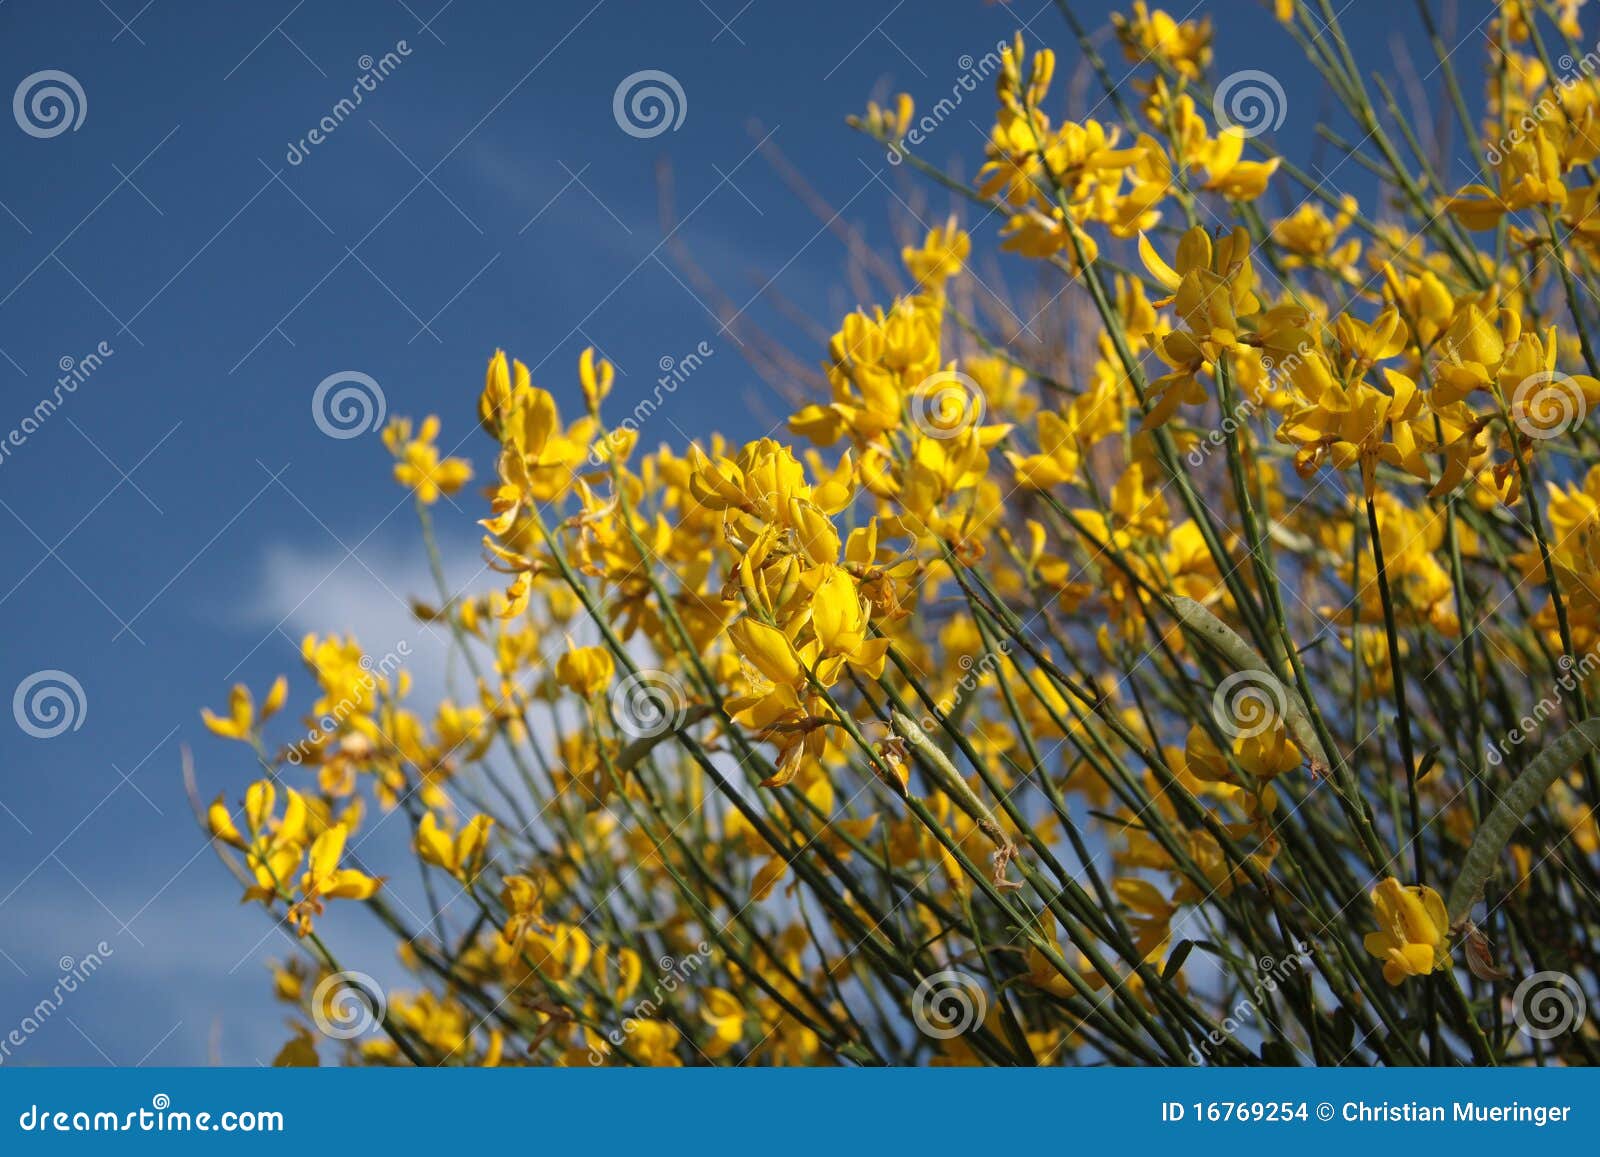 yellow gorse bush